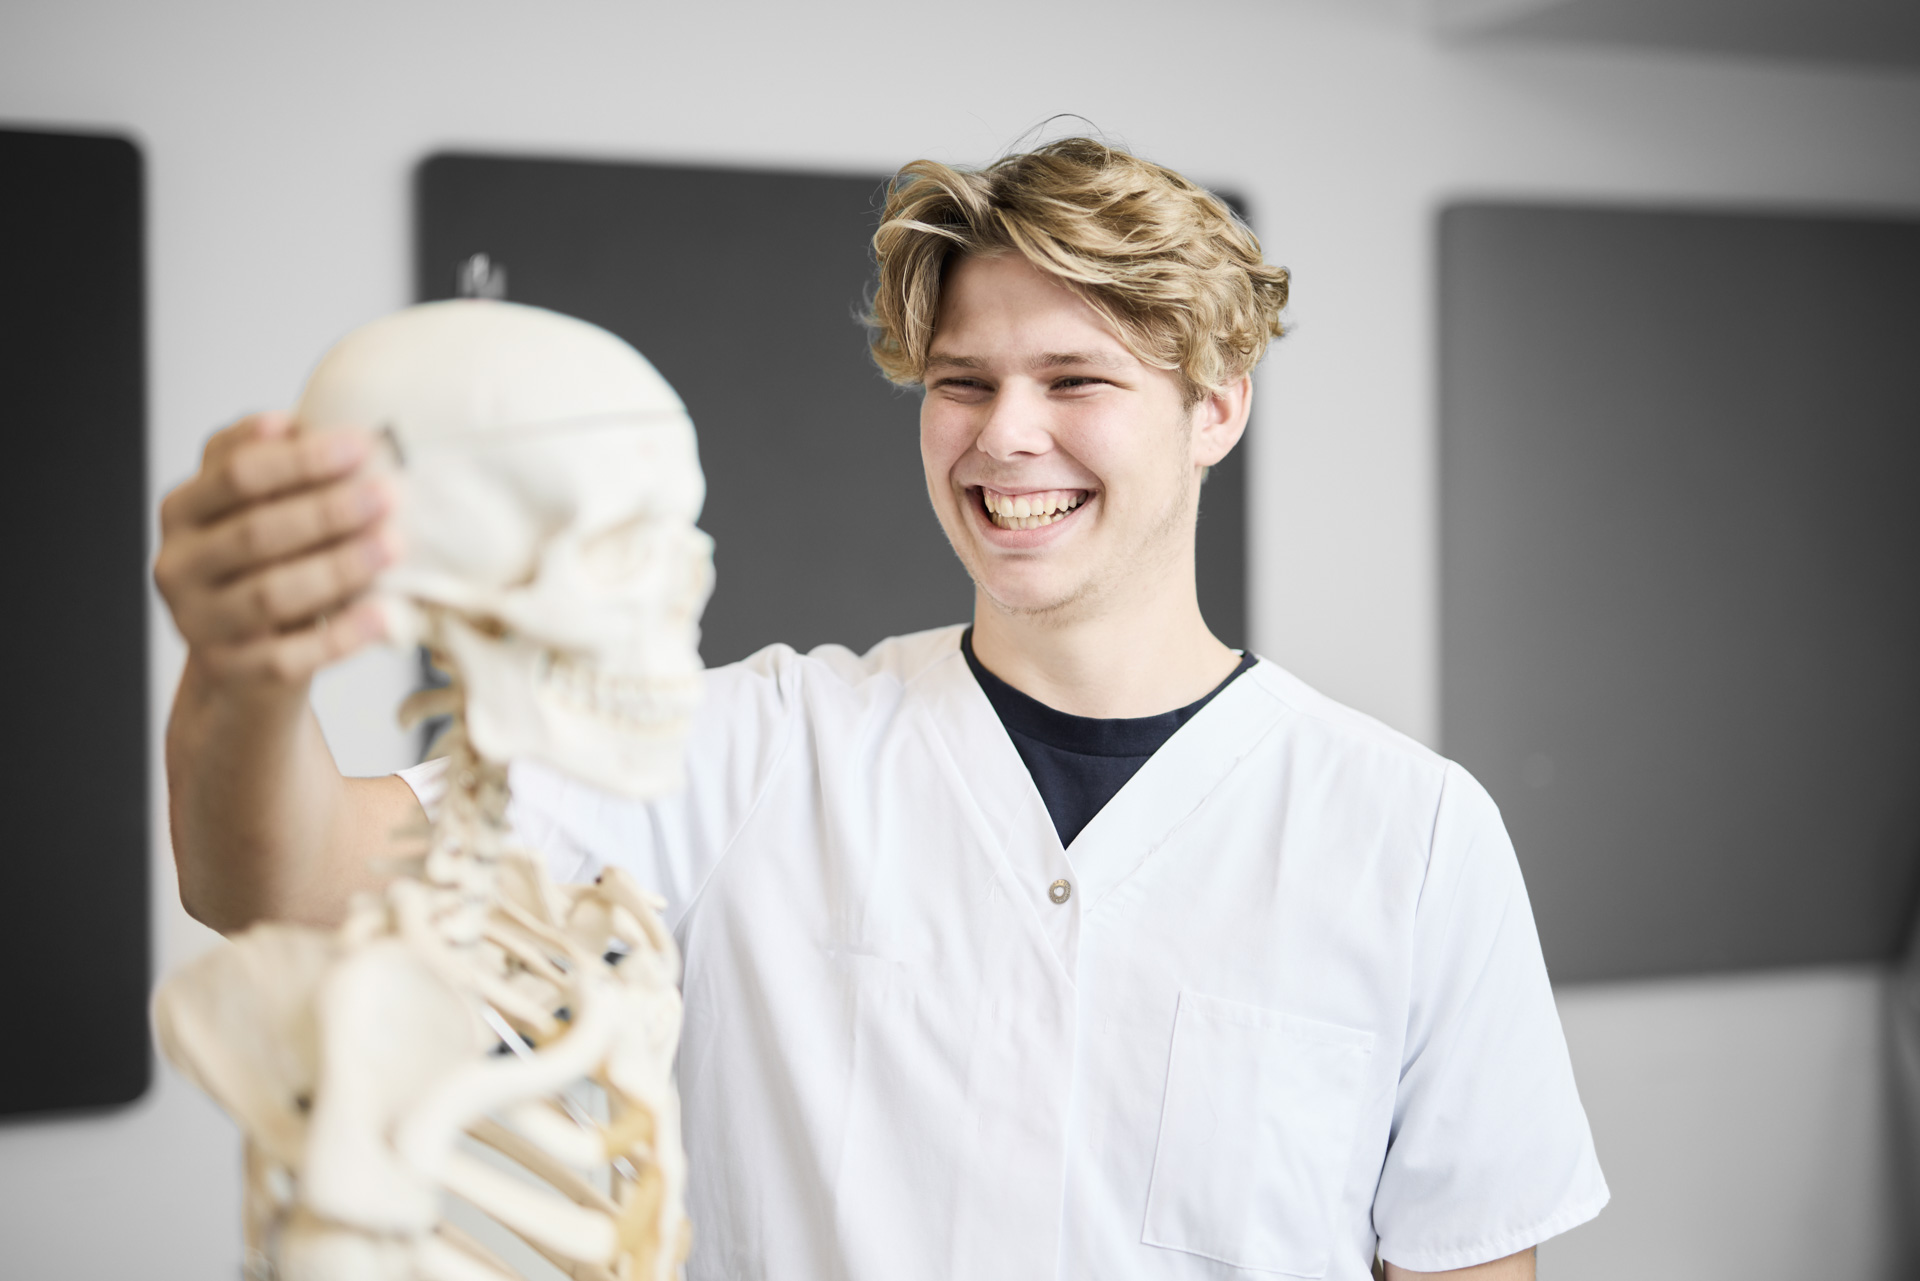 ZBC SOSU-uddannelser i Slagelse - Social- og sundhedsassistent står foran skelet og øver anatomi